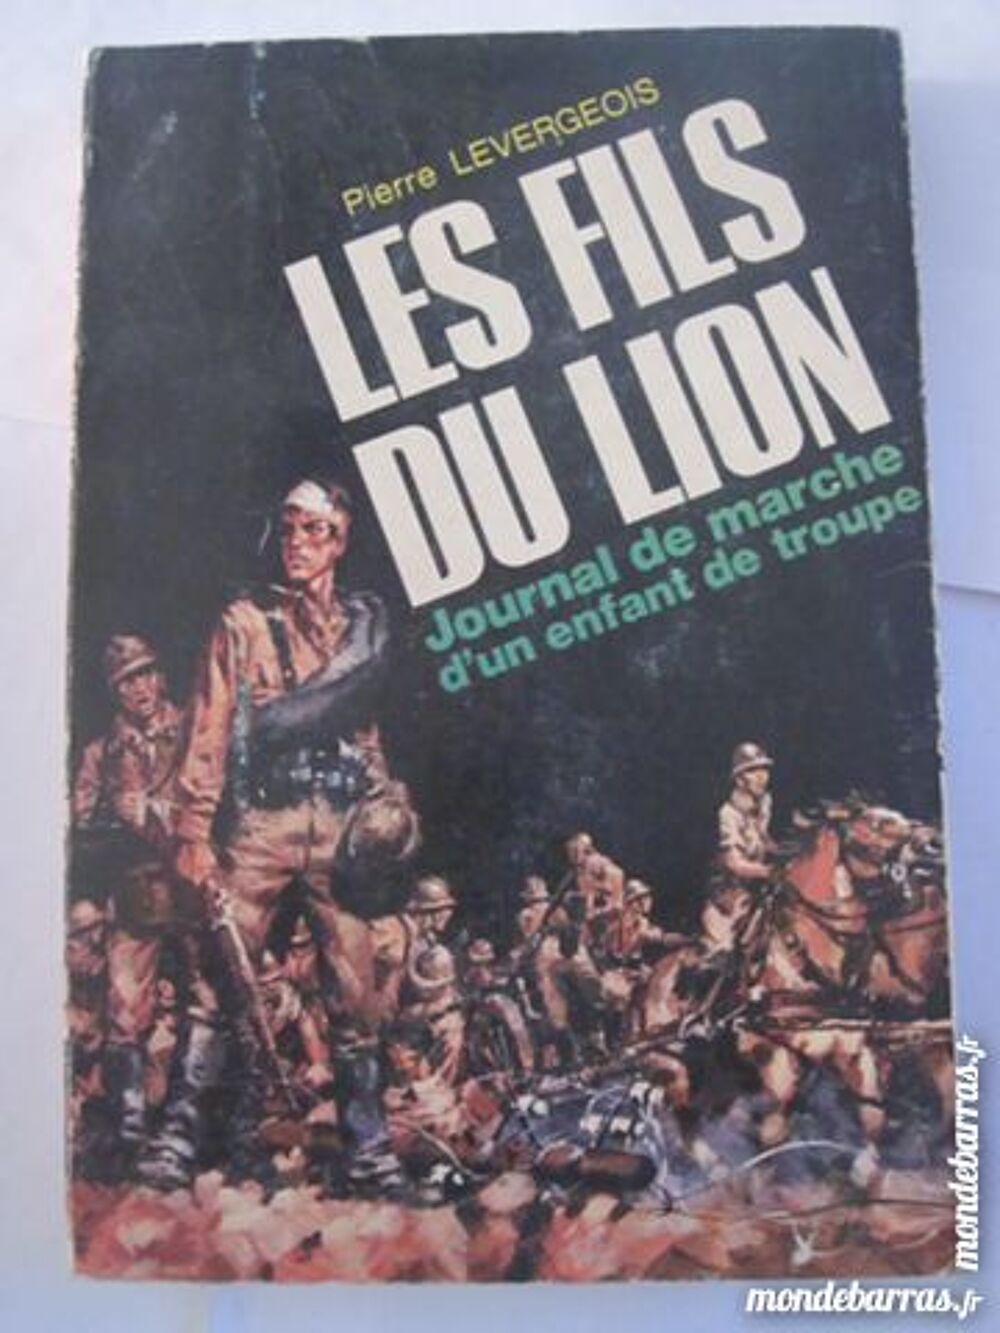 LES FILS DU LION par P. LEVERGEOIS Livres et BD